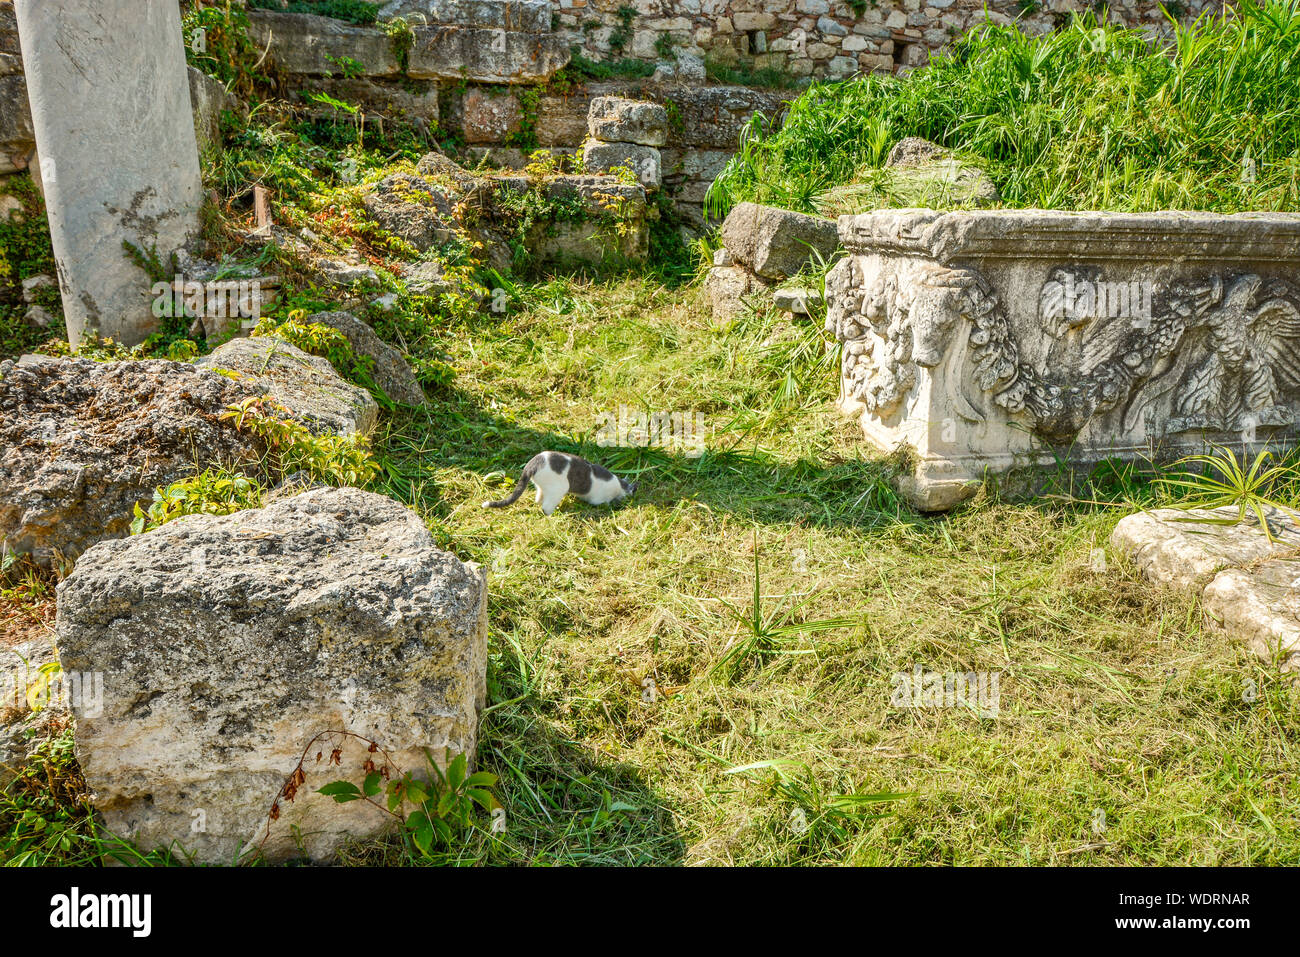 Un chat gris et blanc coller sa tête grecque dans le sol à la recherche de quelque chose à manger ou jouer avec dans l'Agora romaine ruines à Athènes Grèce Banque D'Images